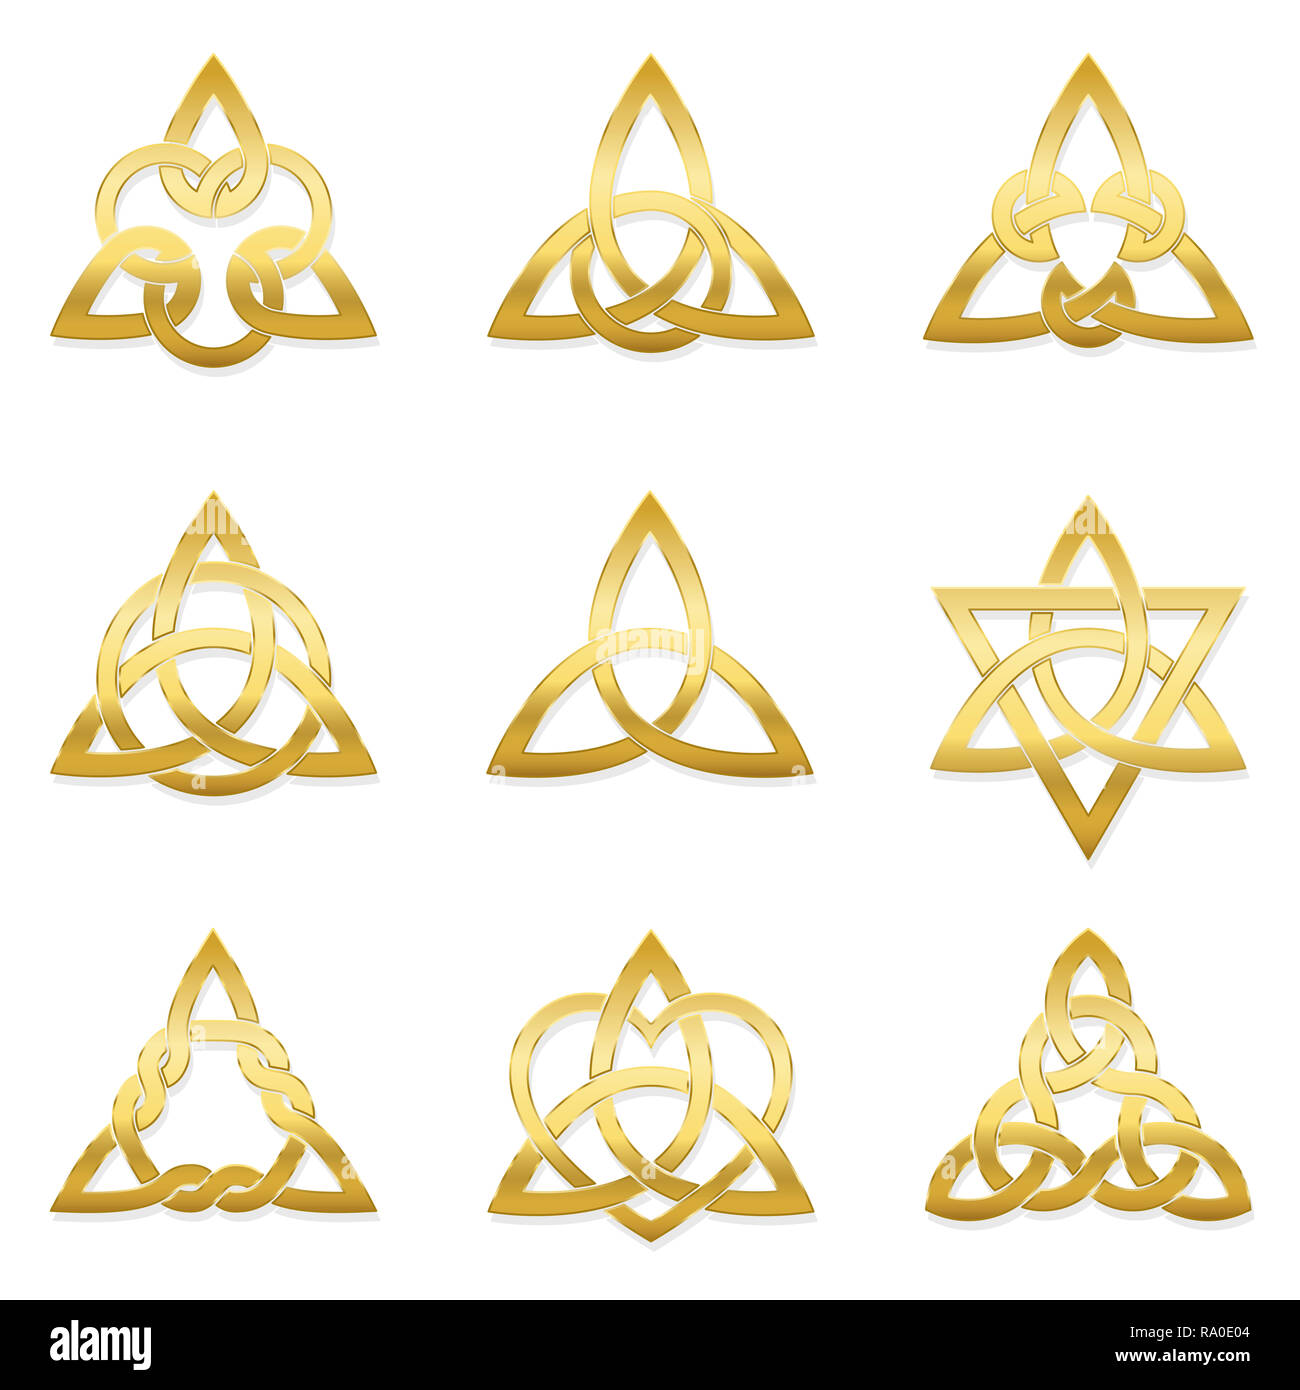 Goldene Spirale Keltische Triskele auf weißem Hintergrund. Triskelion. Ein Motiv besteht aus einem Doppel- Spirale ausstellenden Rotationssymmetrie. Stockfoto